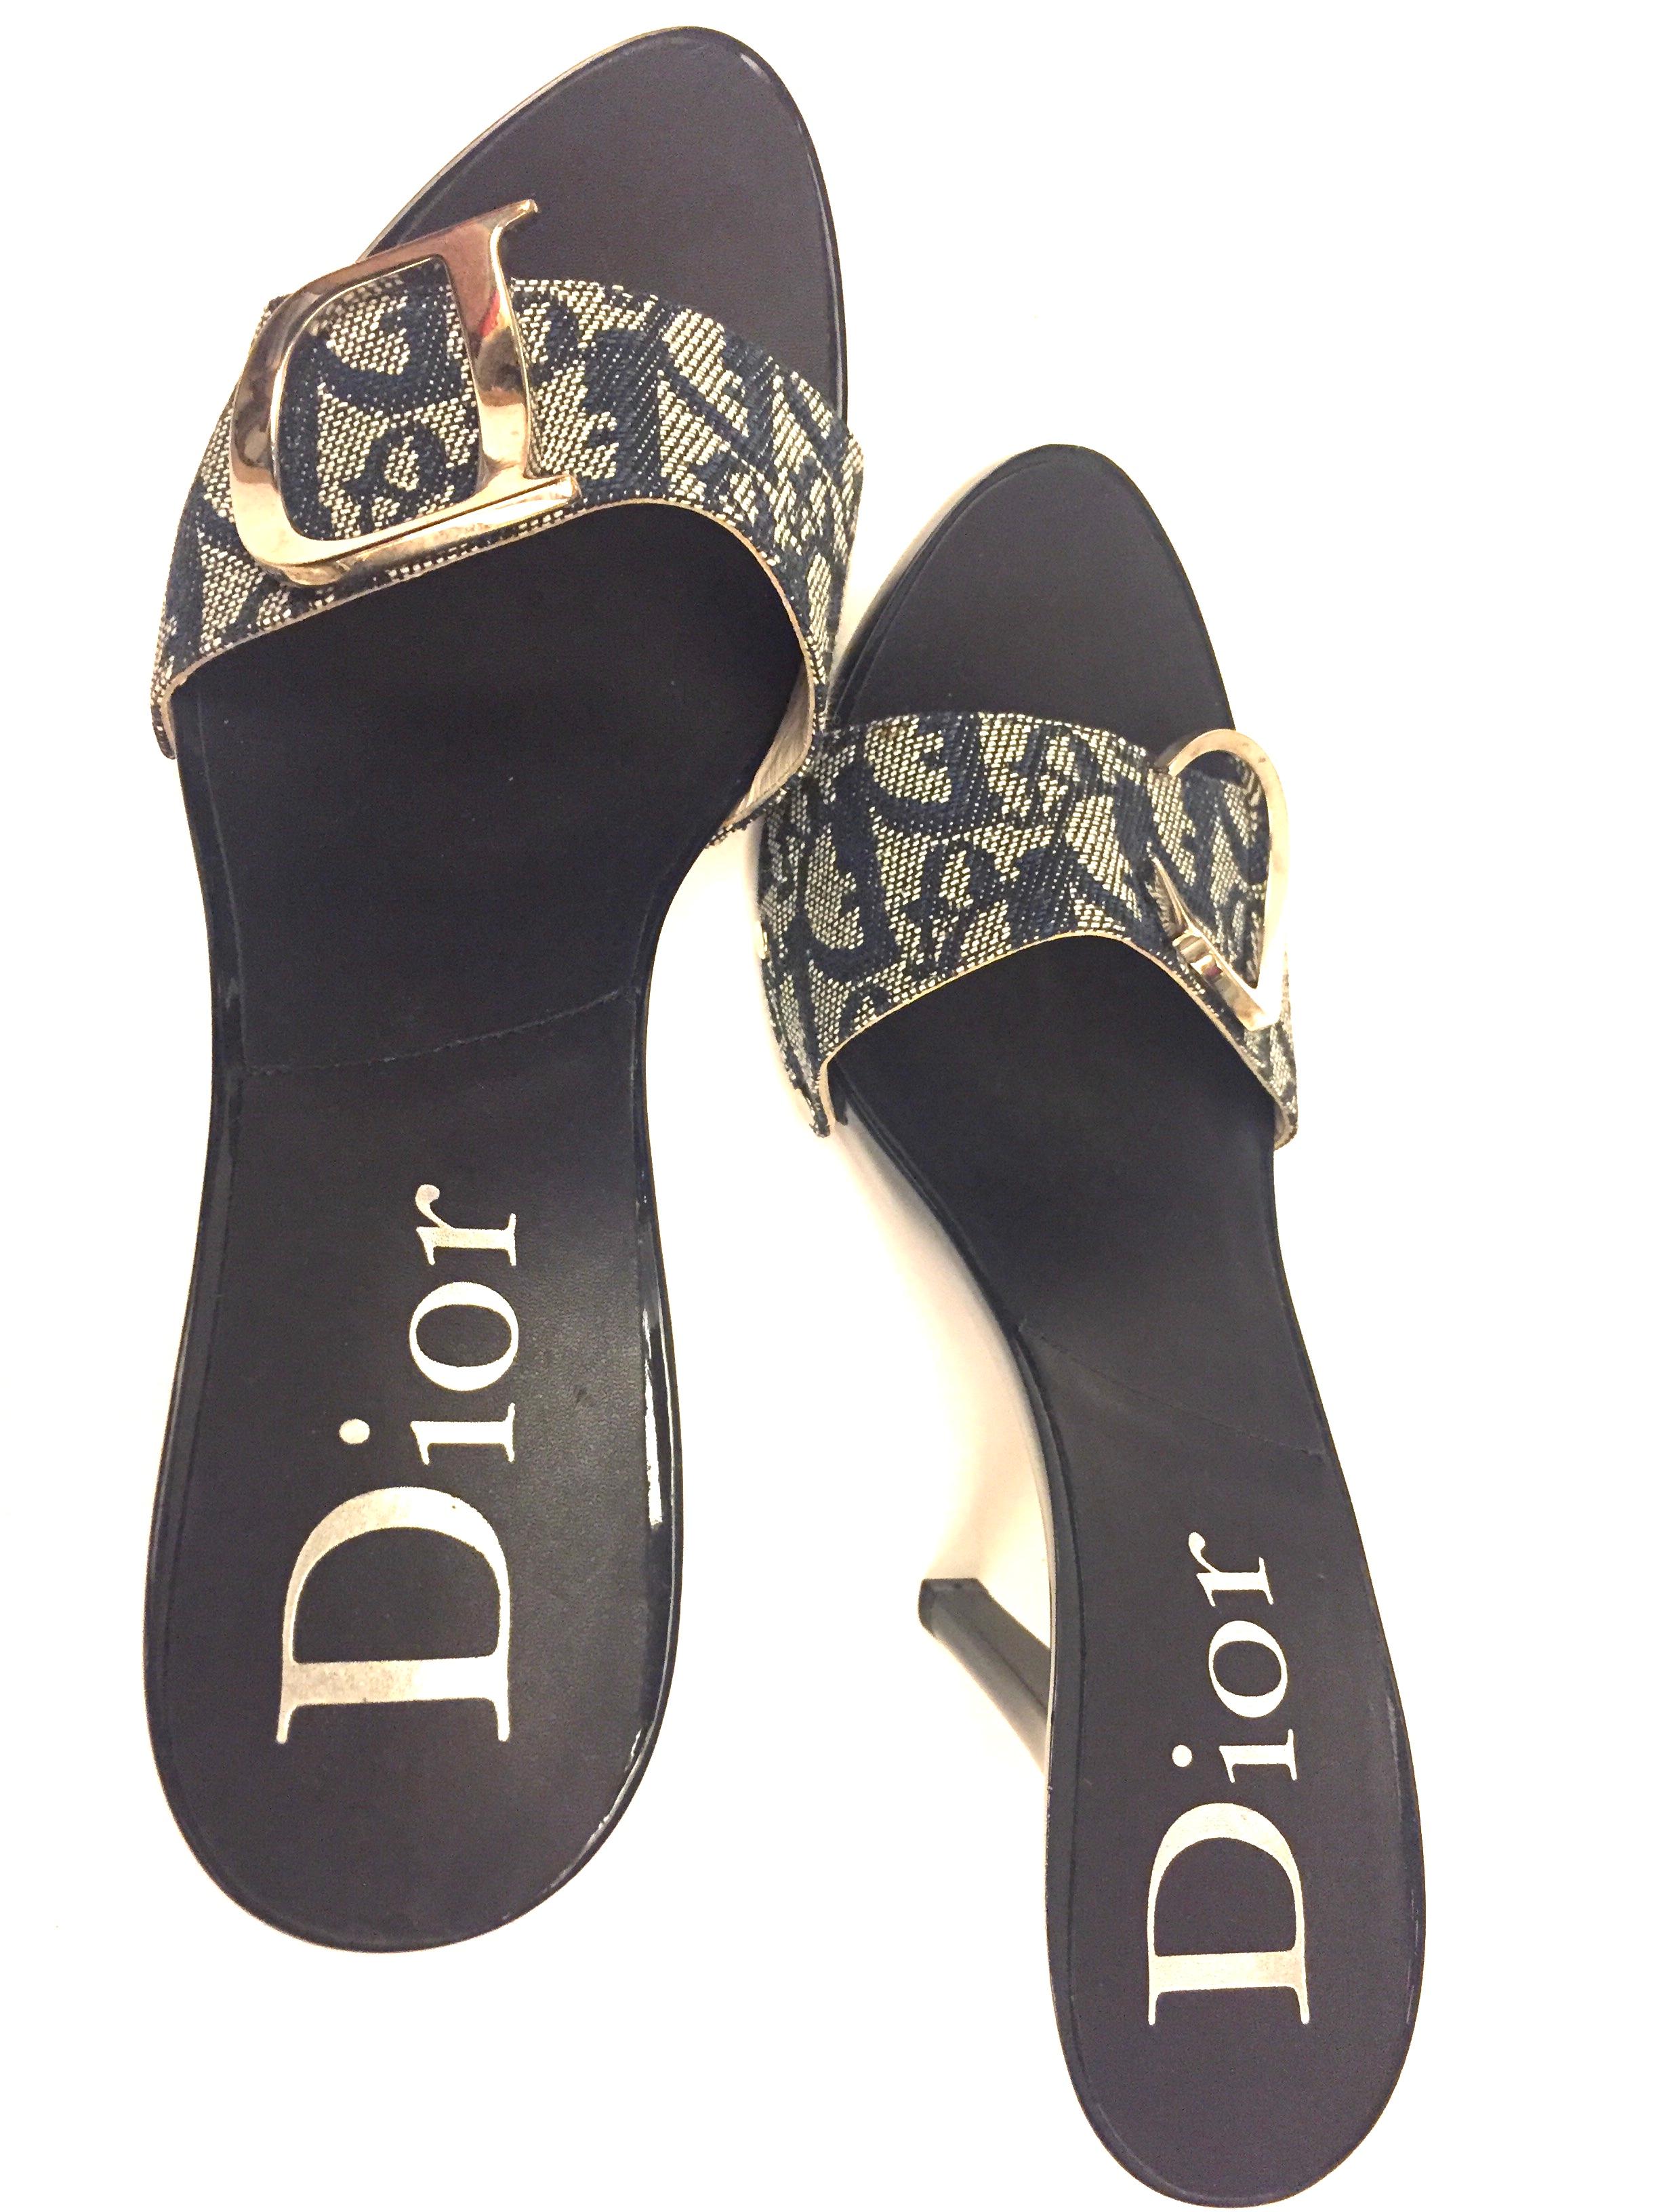 dior monogram heels